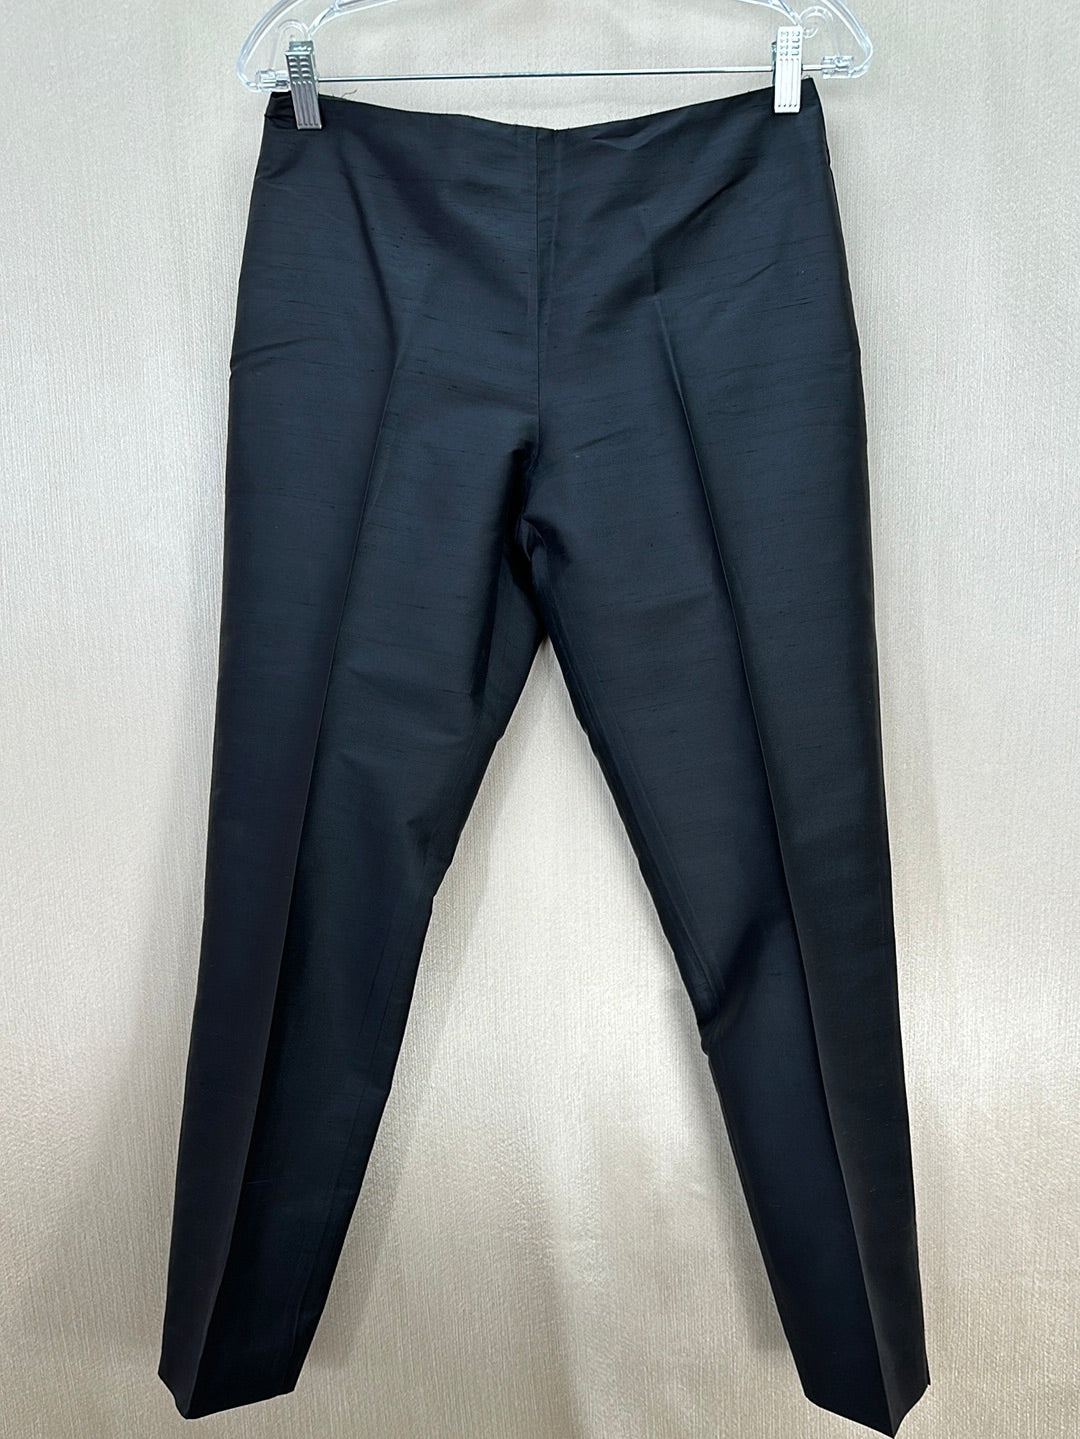 RALPH LAUREN SPORT black 100% Silk Side Zip Tapered Crop Pants - 8